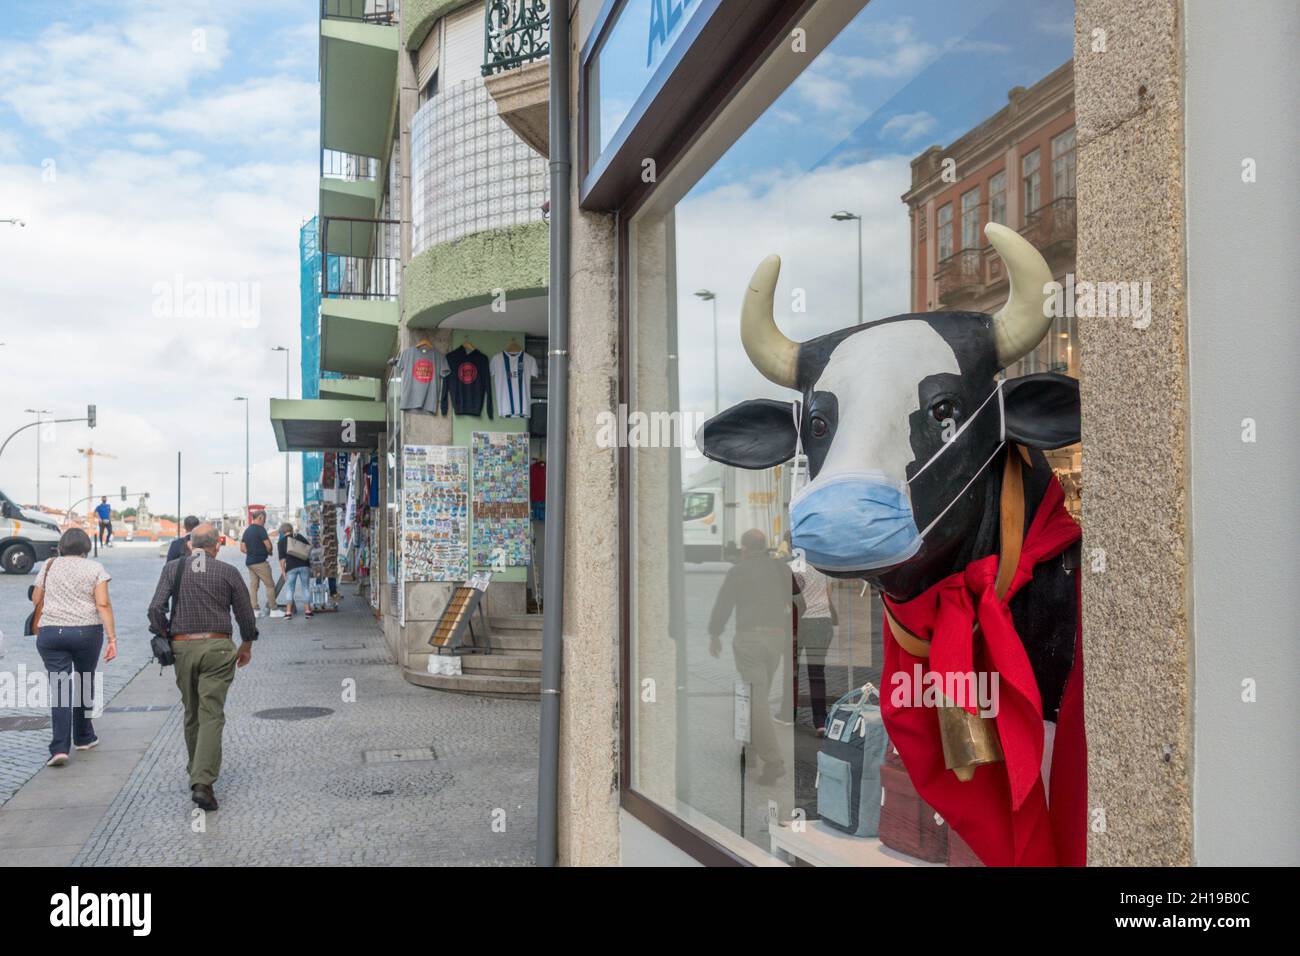 Tienda de Ale Hop, cadena de tiendas de regalos española, mostrando la estatua de la vaca con máscara durante la pandemia de covid, Portugal. Foto de stock